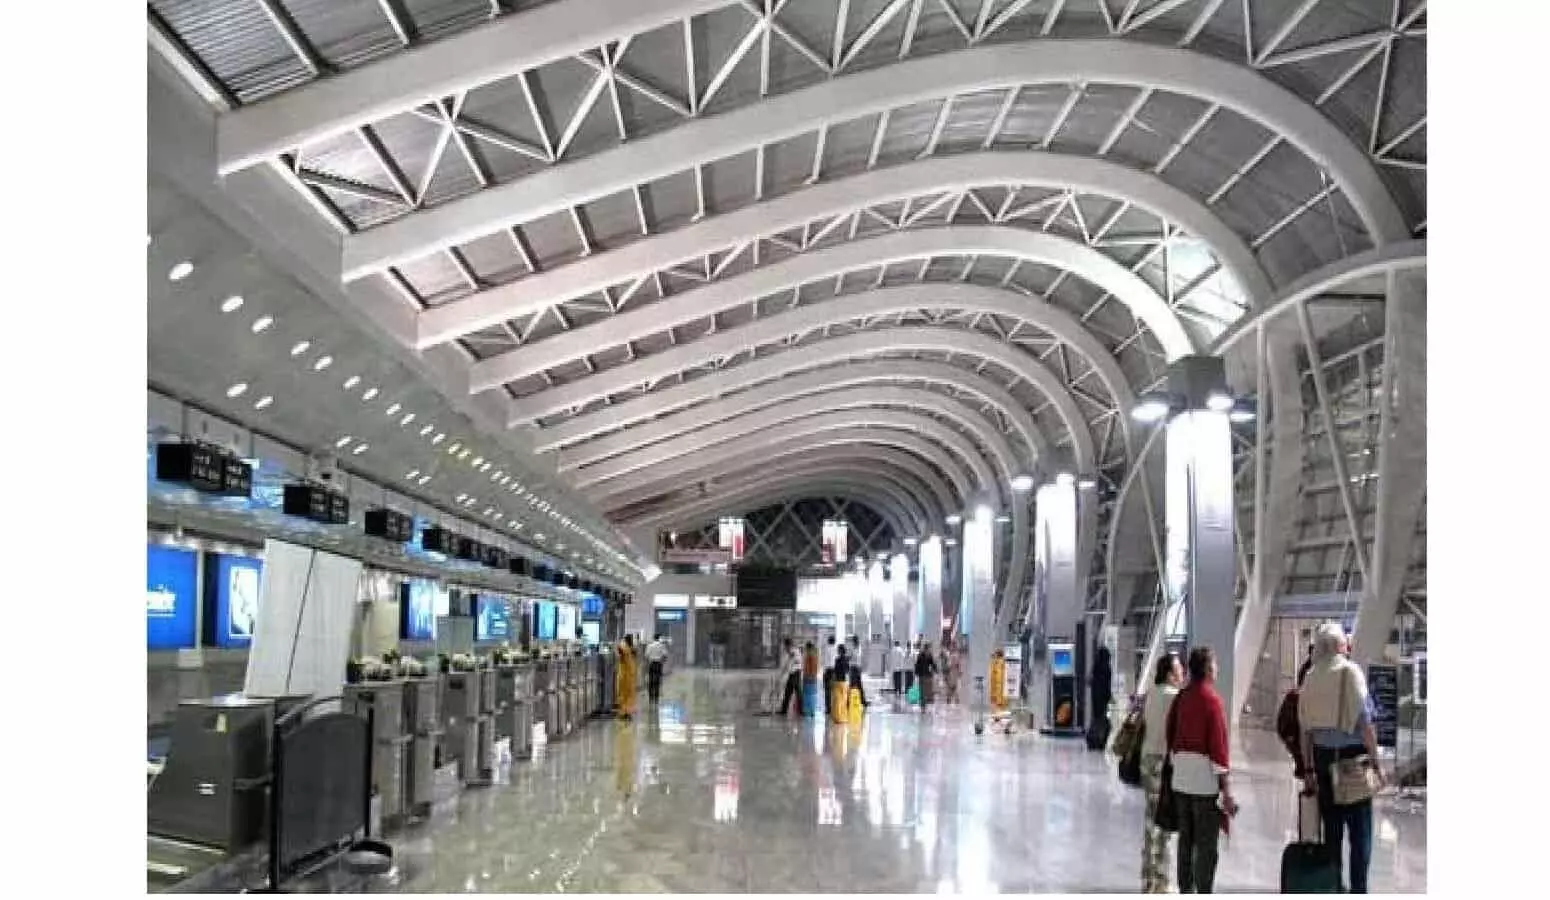 एयरपोर्ट की तरह दिखेंगे एमपी के रेलवे स्टेशन, विध्य के 4 स्टेशन भी शामिल